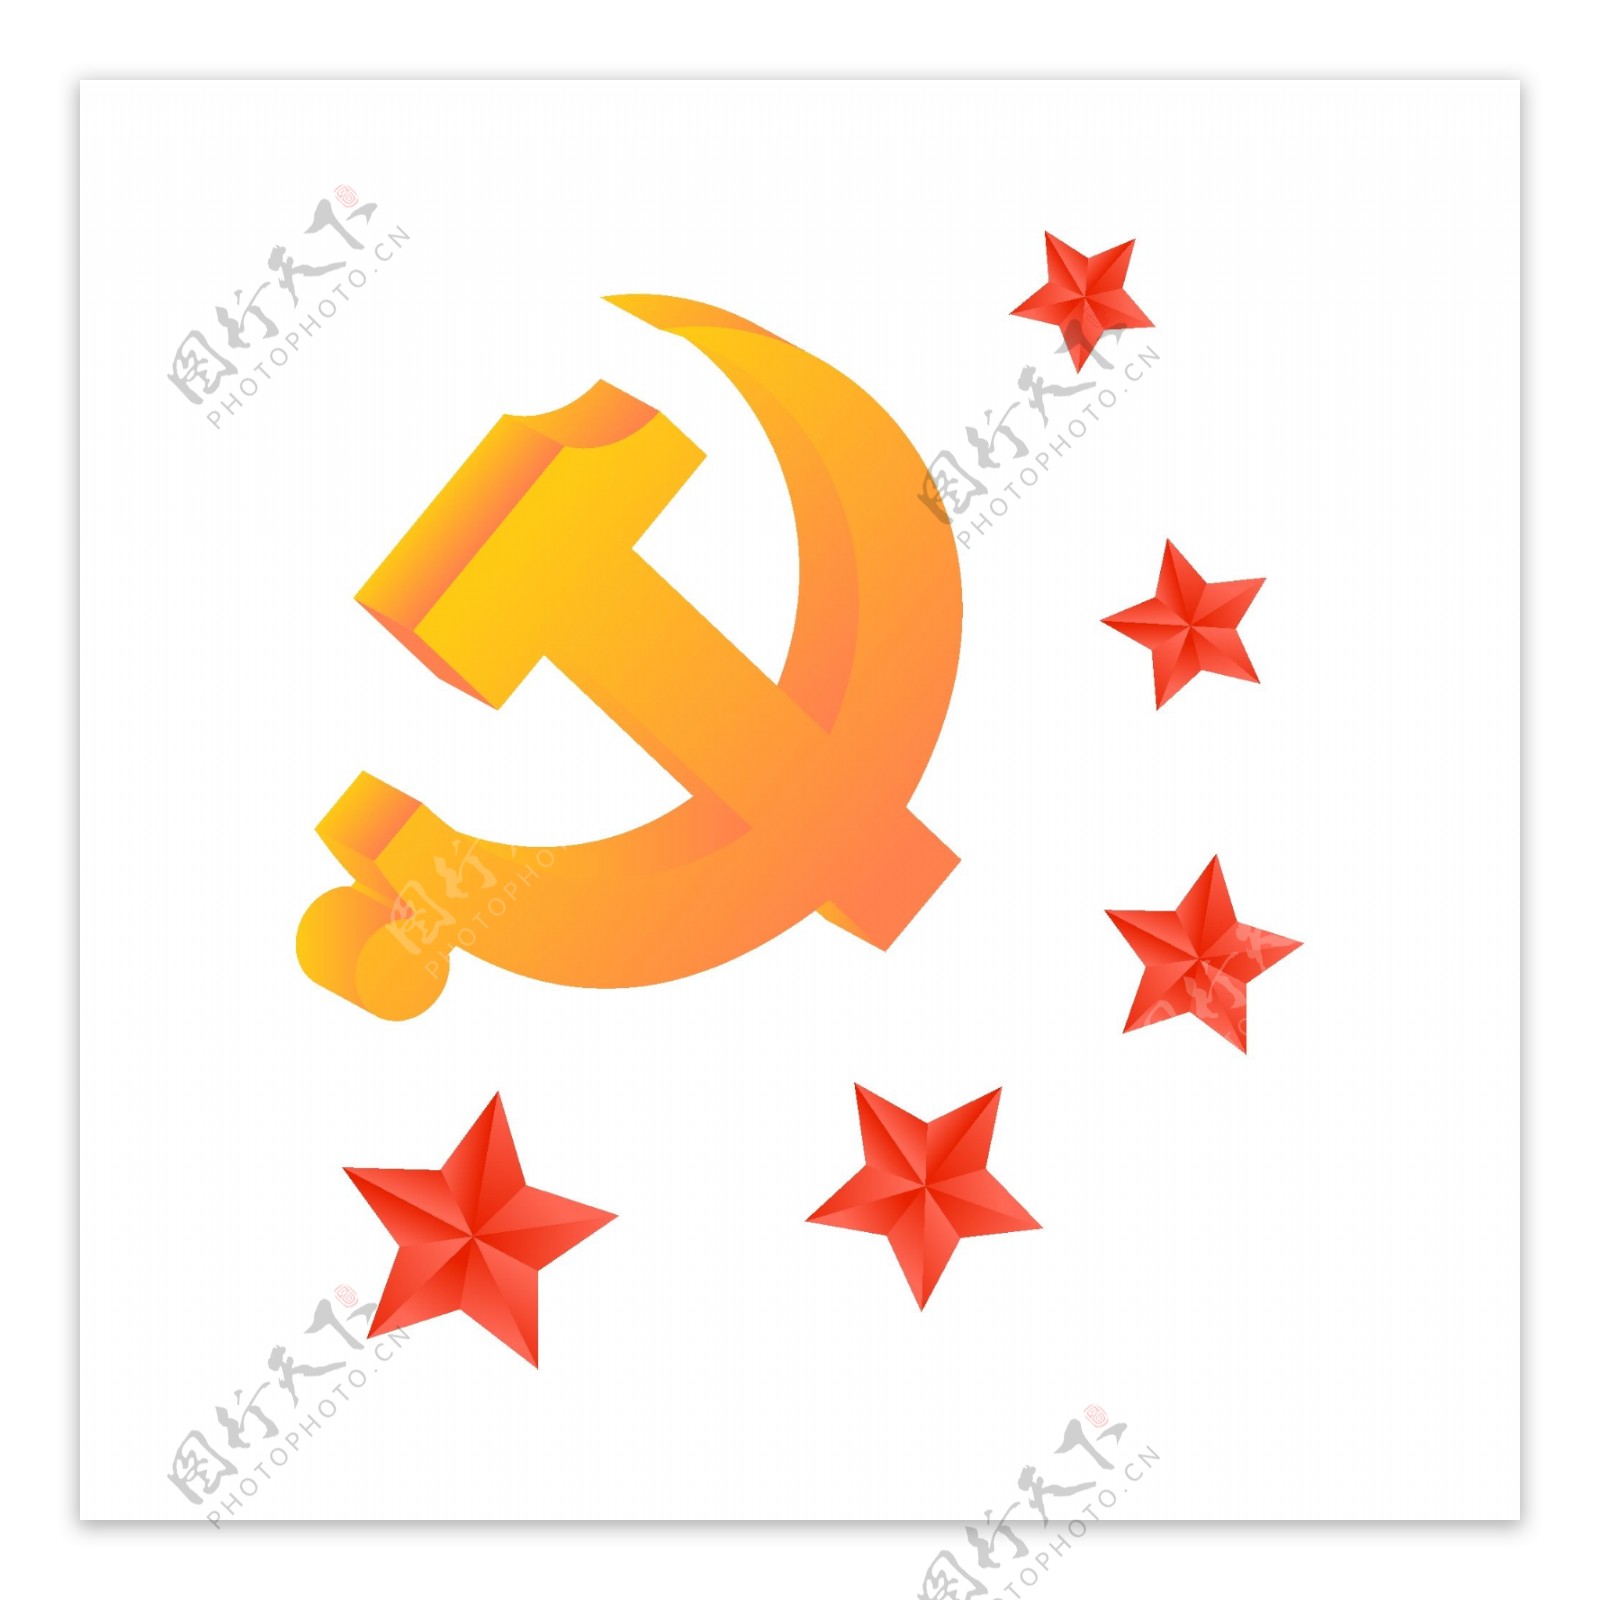 2.5D中国共产党五角星围绕立体矢量党徽